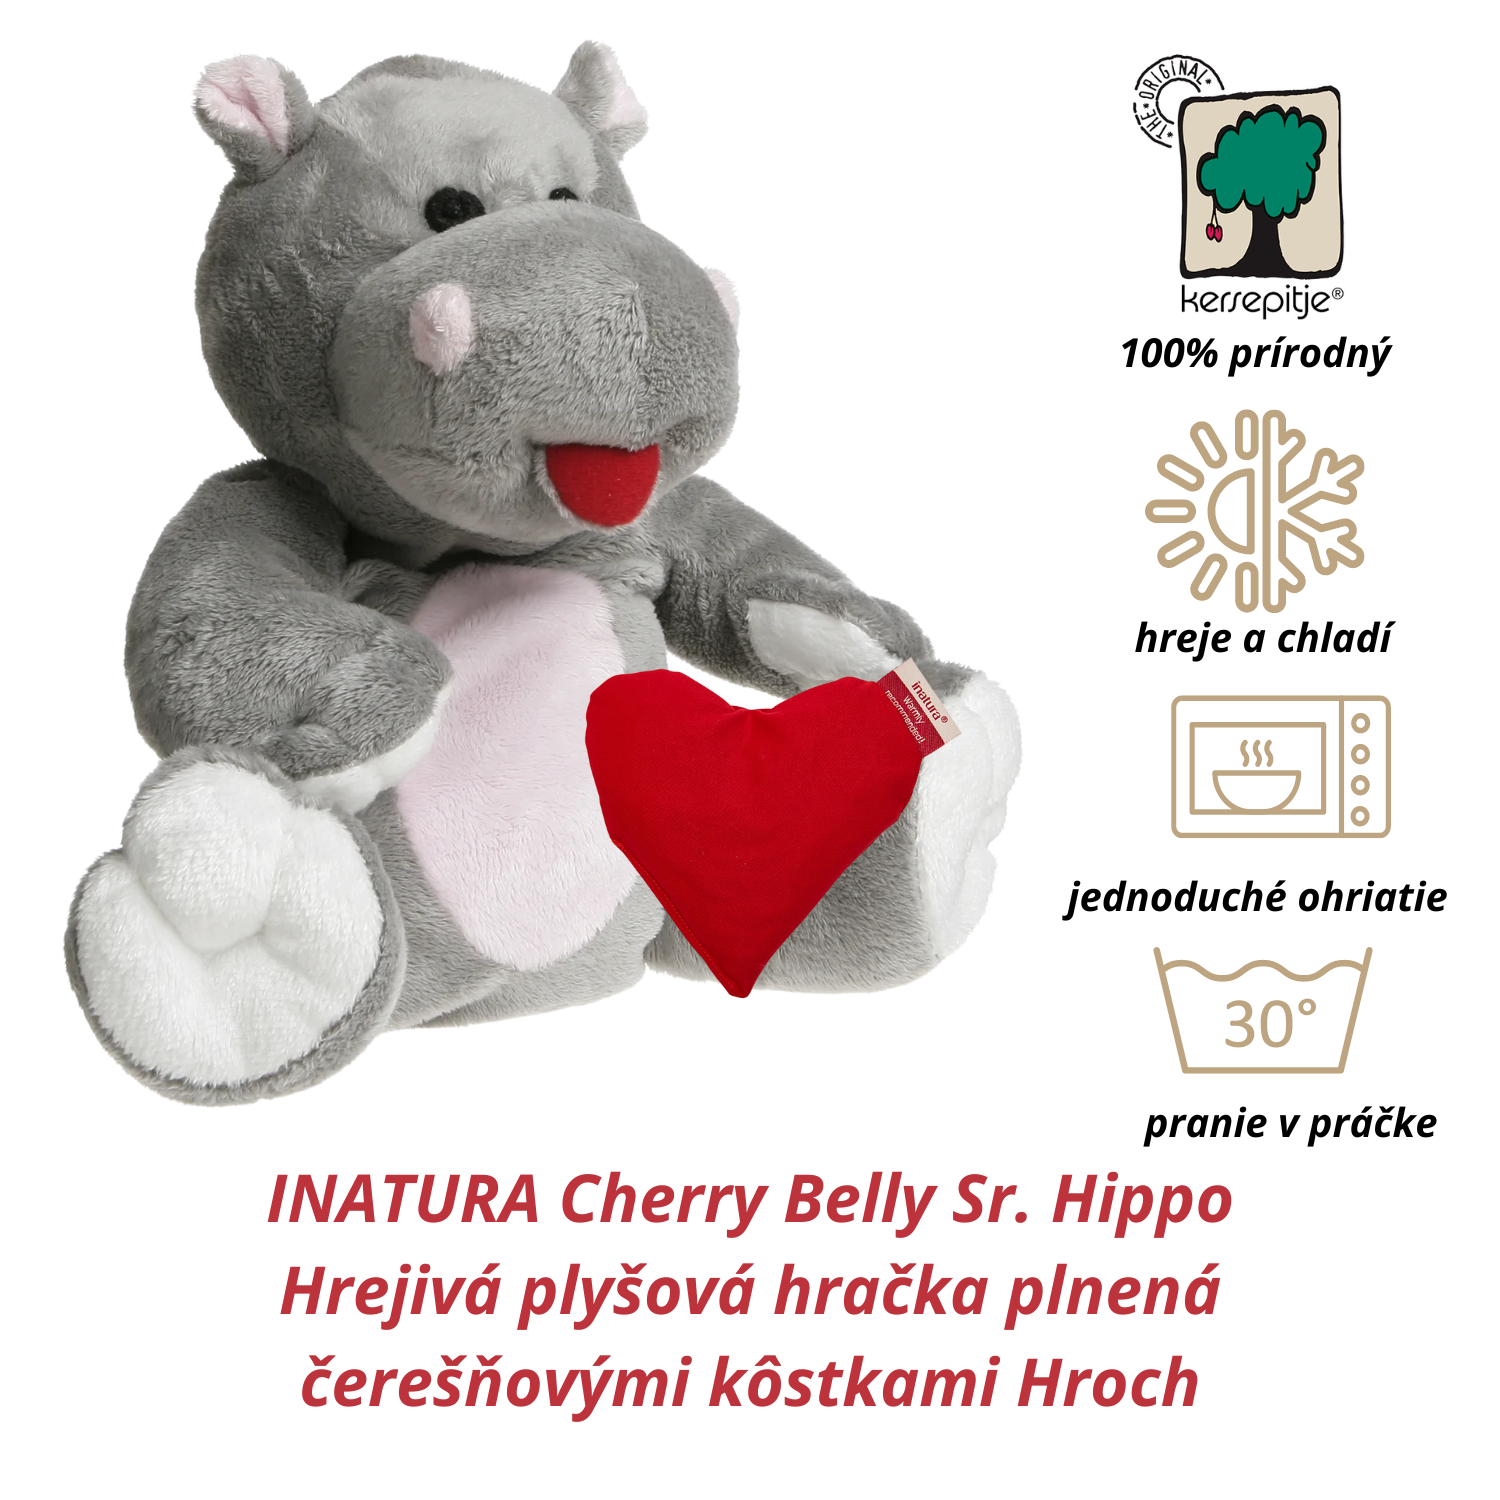 INATURA Cherry Belly Sr. Hippo